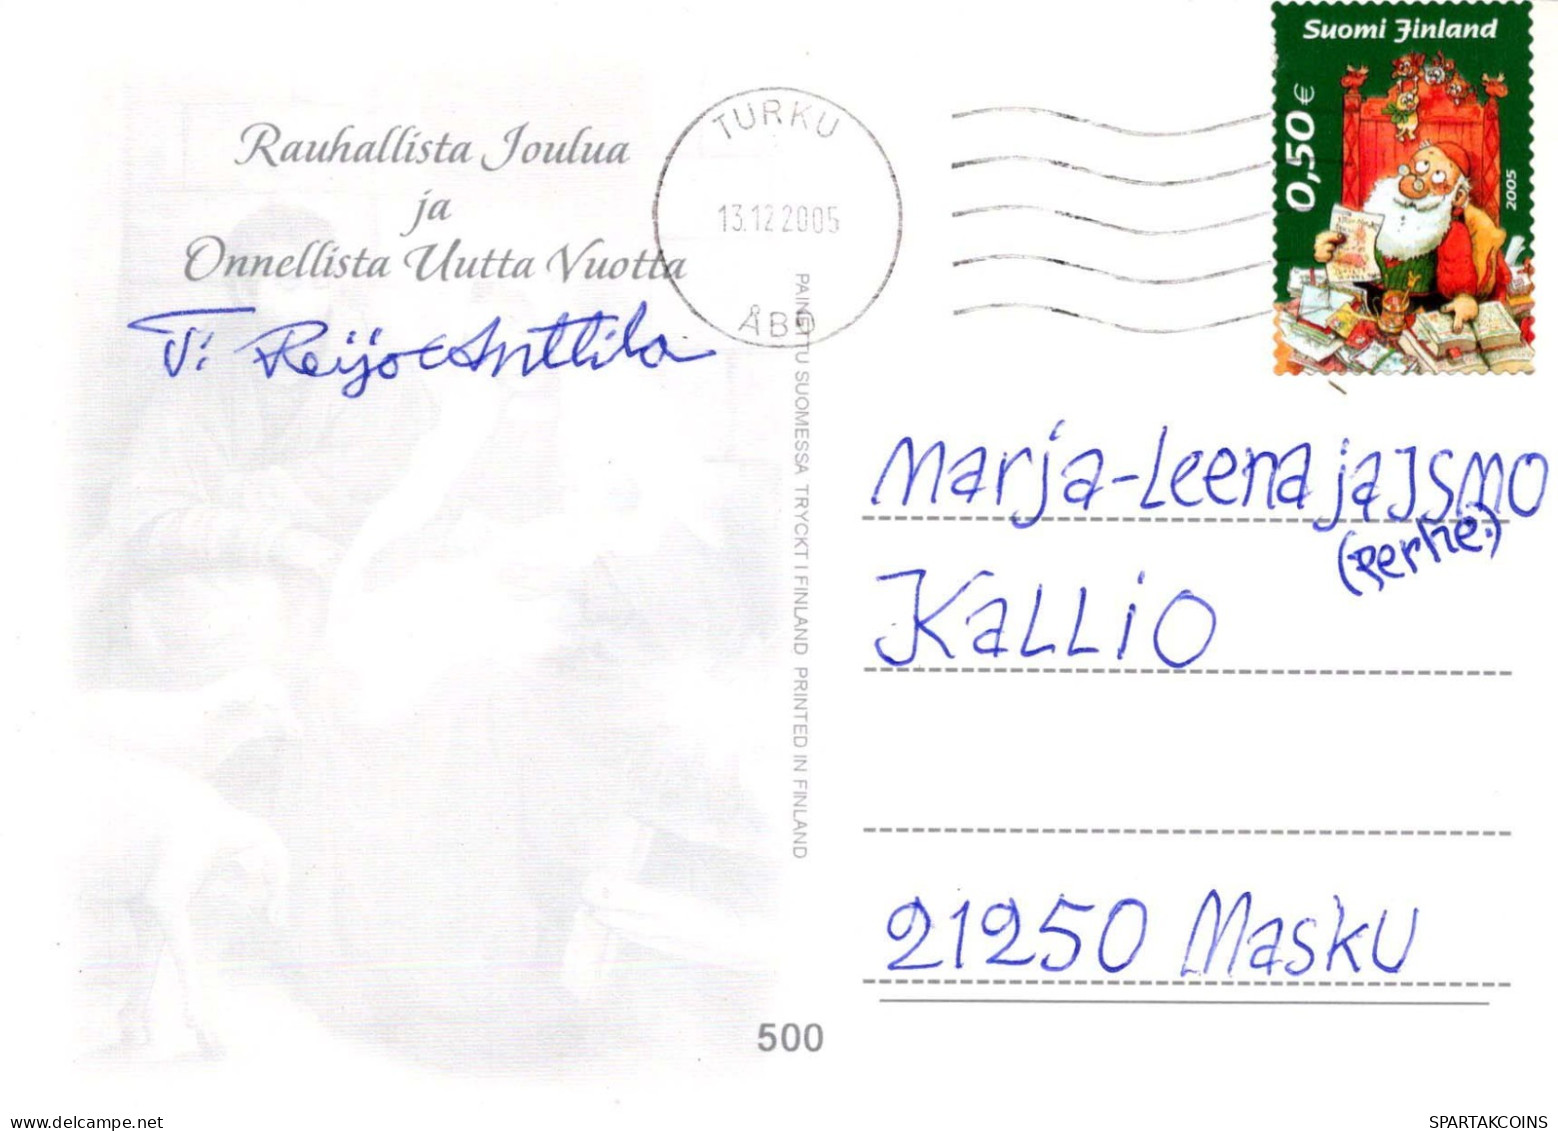 Jungfrau Maria Madonna Jesuskind Weihnachten Religion Vintage Ansichtskarte Postkarte CPSM #PBB778.DE - Maagd Maria En Madonnas